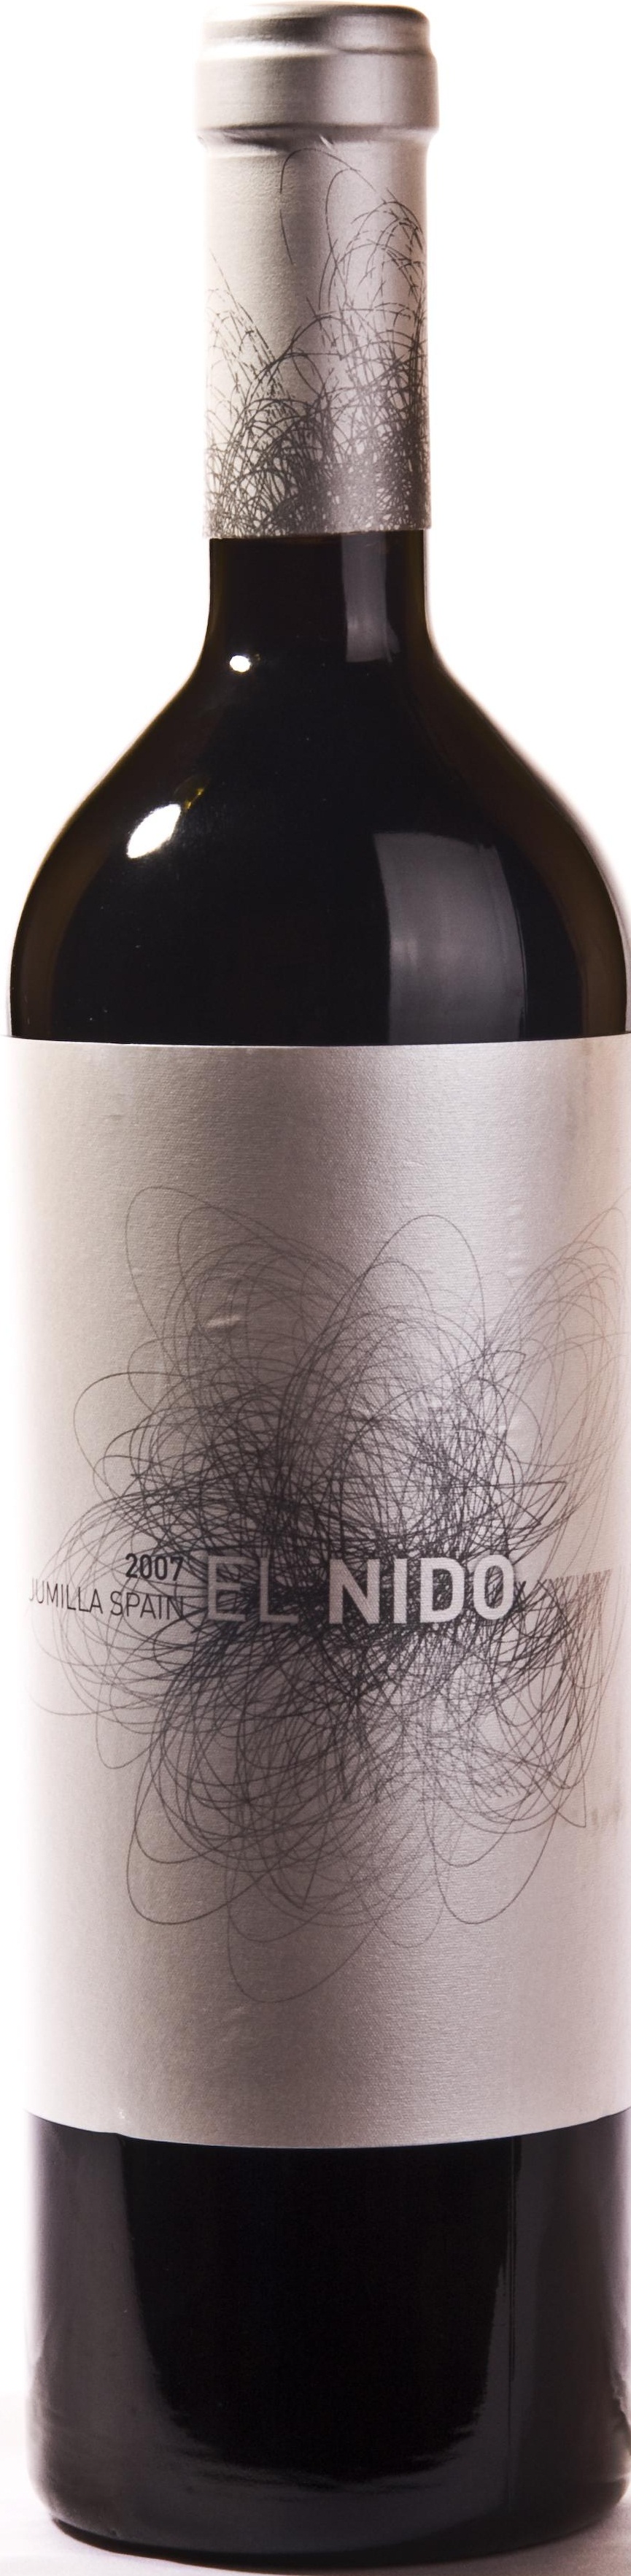 Logo del vino El Nido